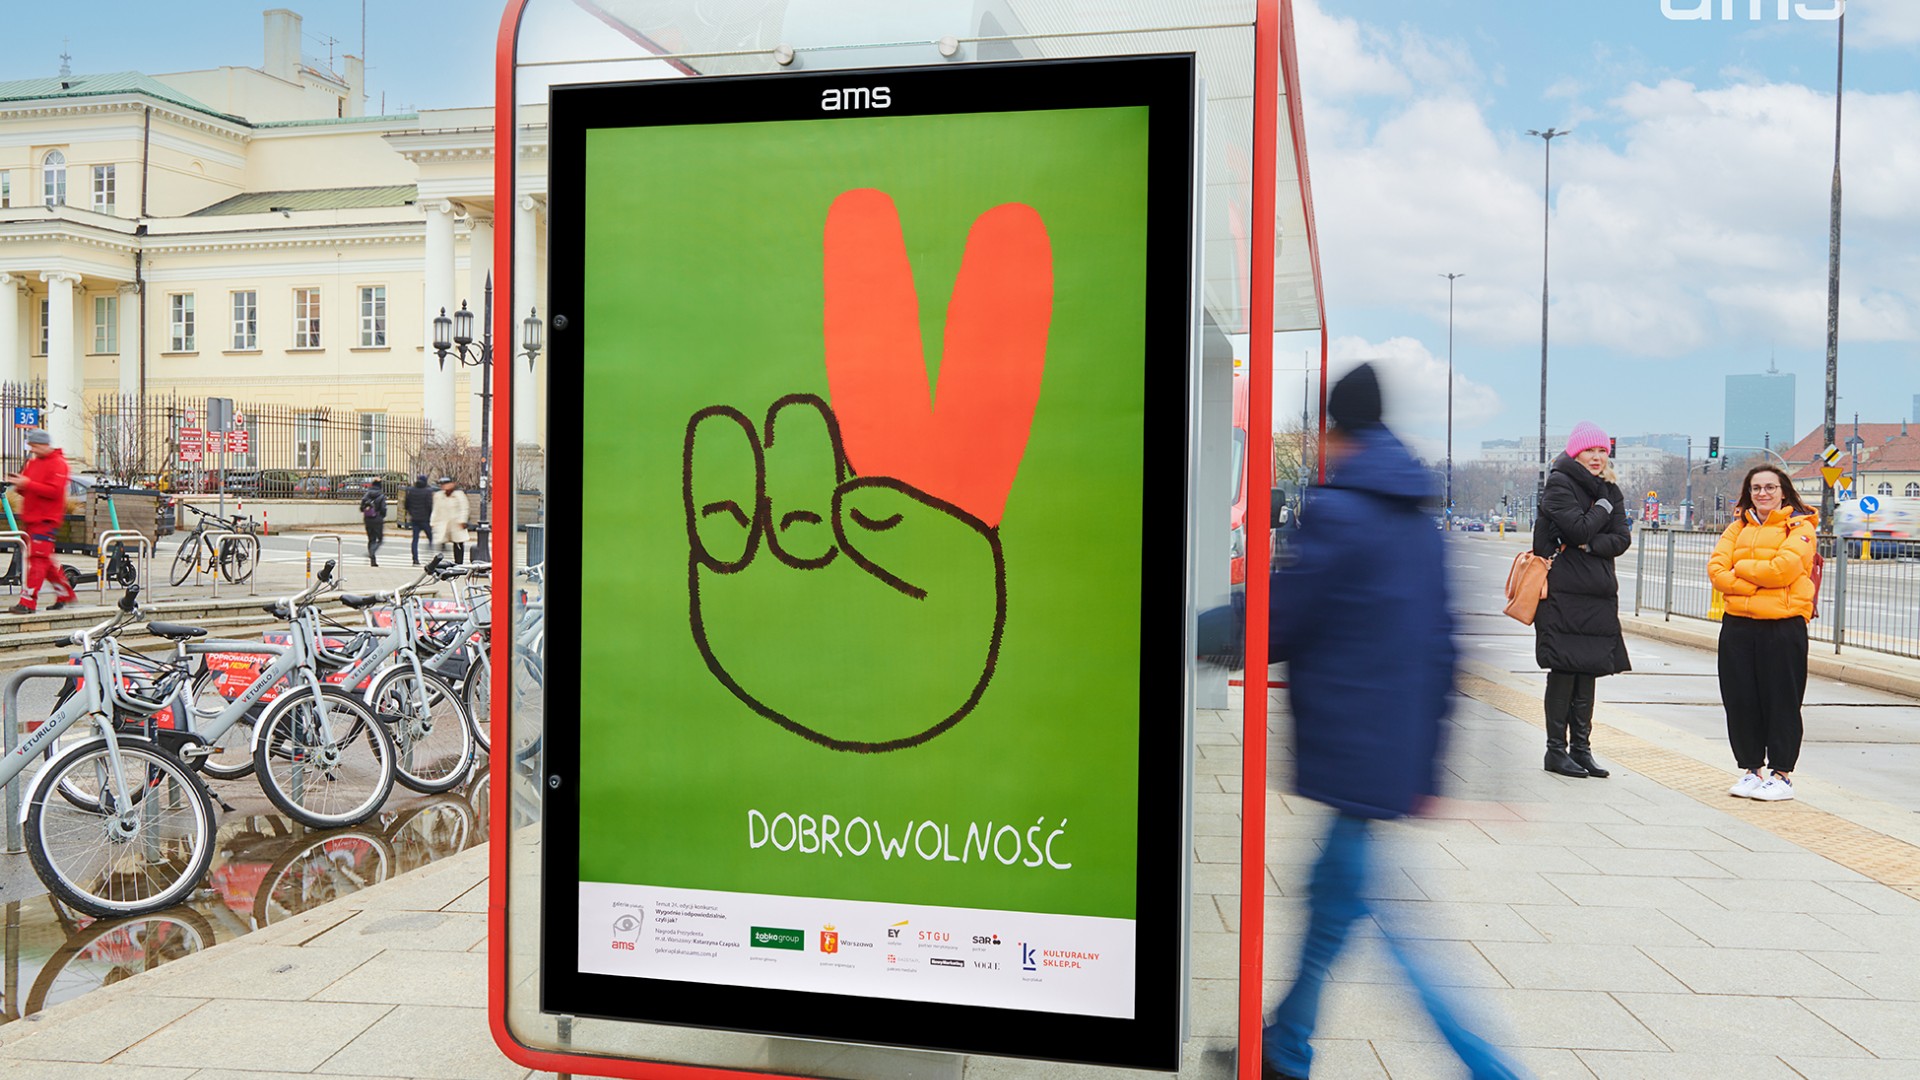 AMS i Miasto Stołeczne Warszawa promują ideę wolontariatu na stołecznych przystankach